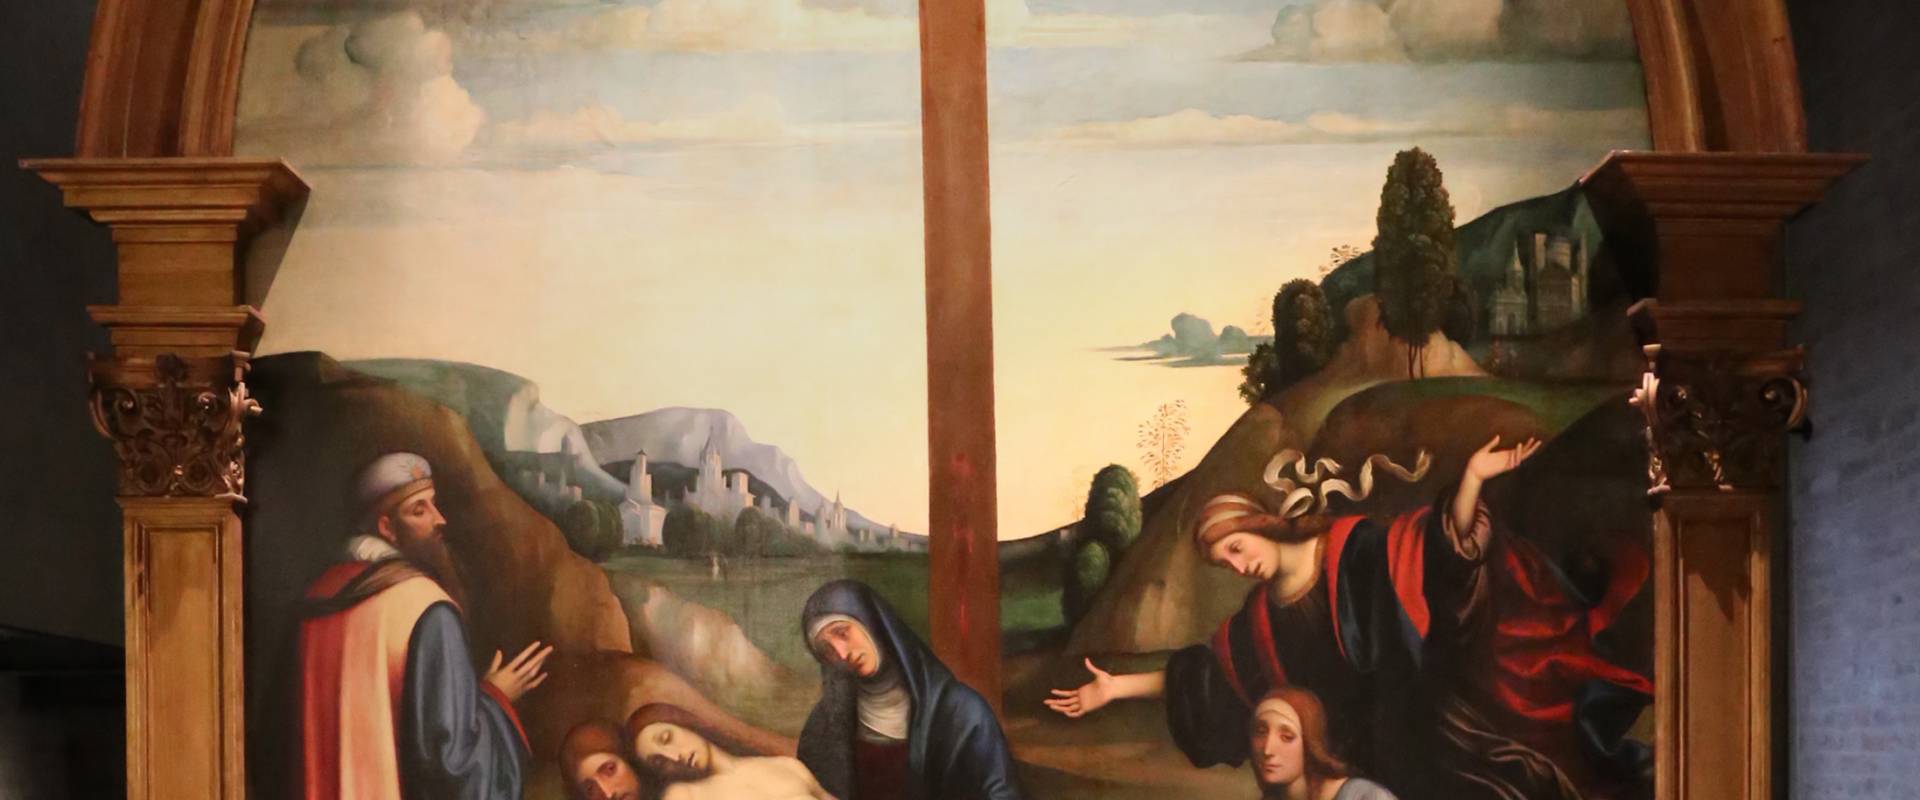 Francesco francia, compianto sul cristo morto, 1510-15 ca foto di Sailko